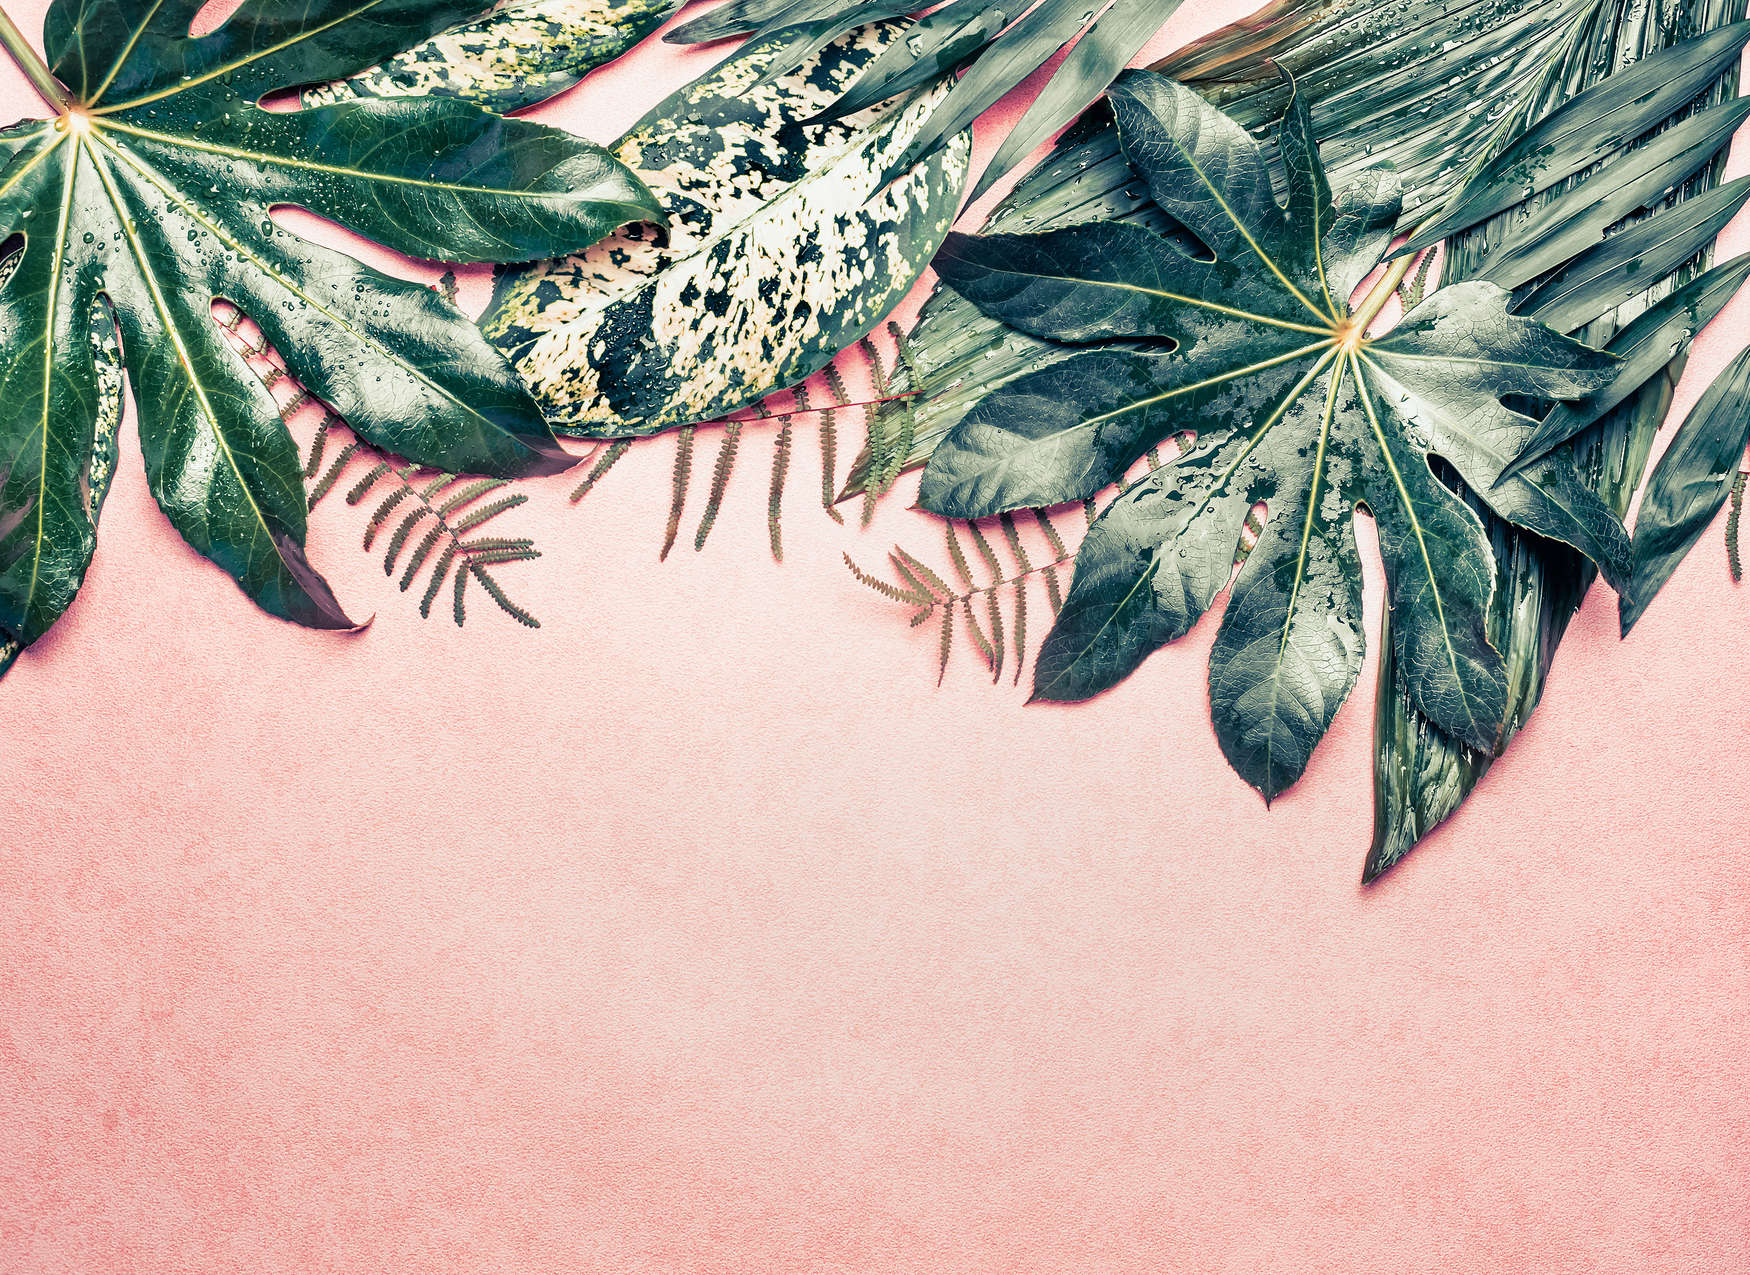             Fototapete Blätter Muster Monstera – Rosa, Grün
        